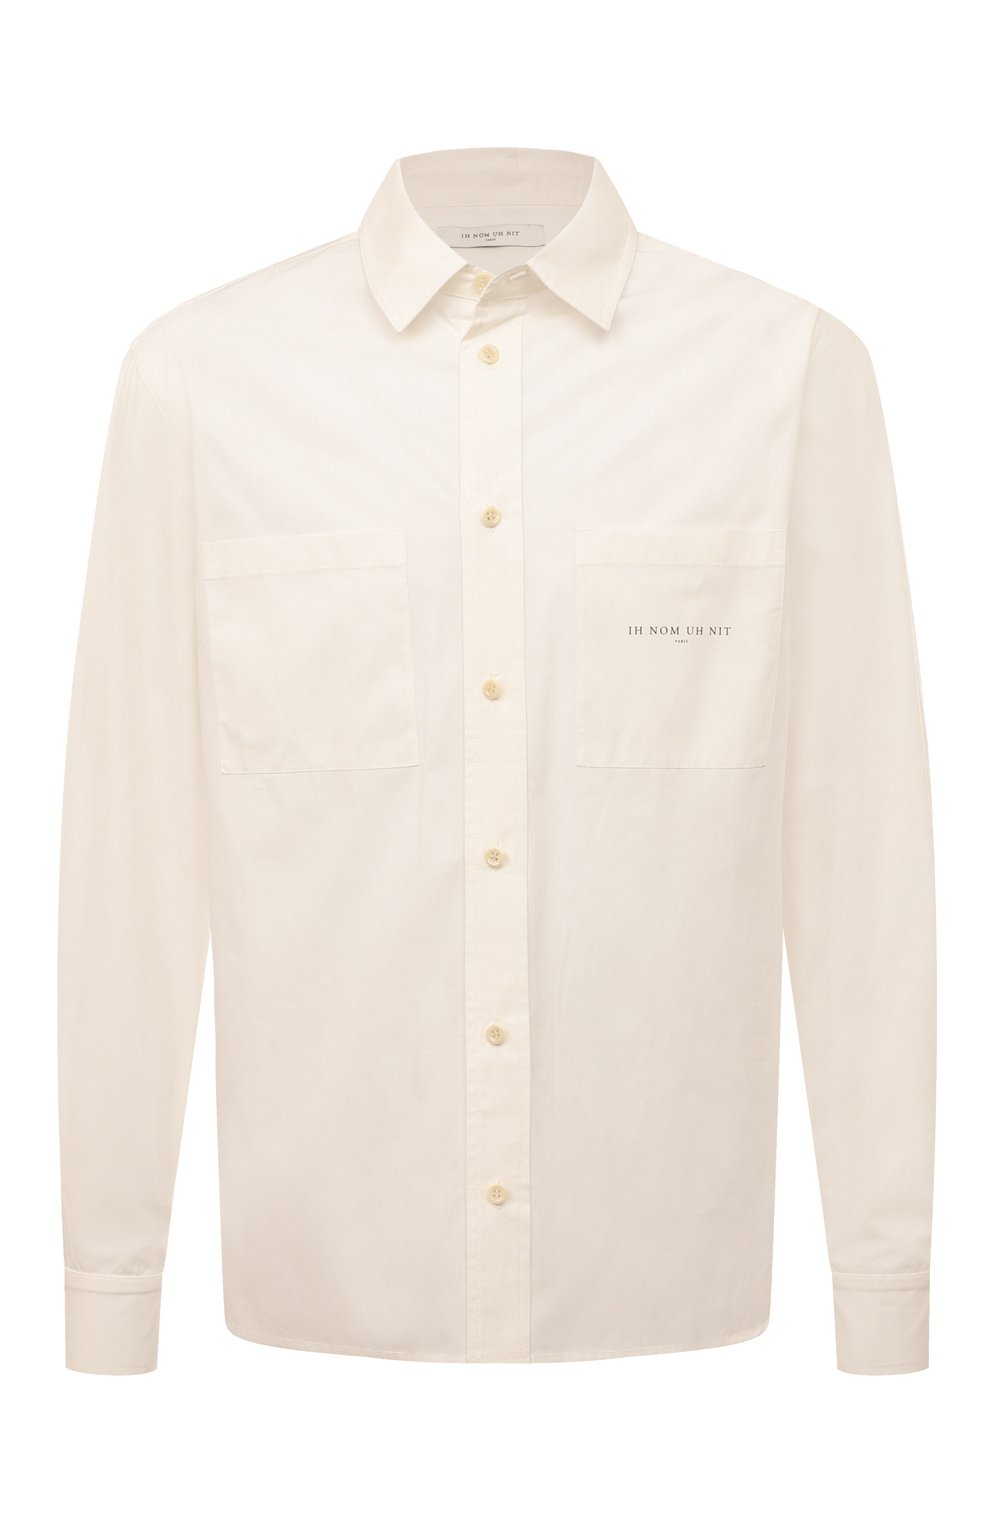 Рубашки Ih Nom Uh Nit, Хлопковая рубашка Ih Nom Uh Nit, Индия, Белый, Хлопок: 100%;, 13365154  - купить